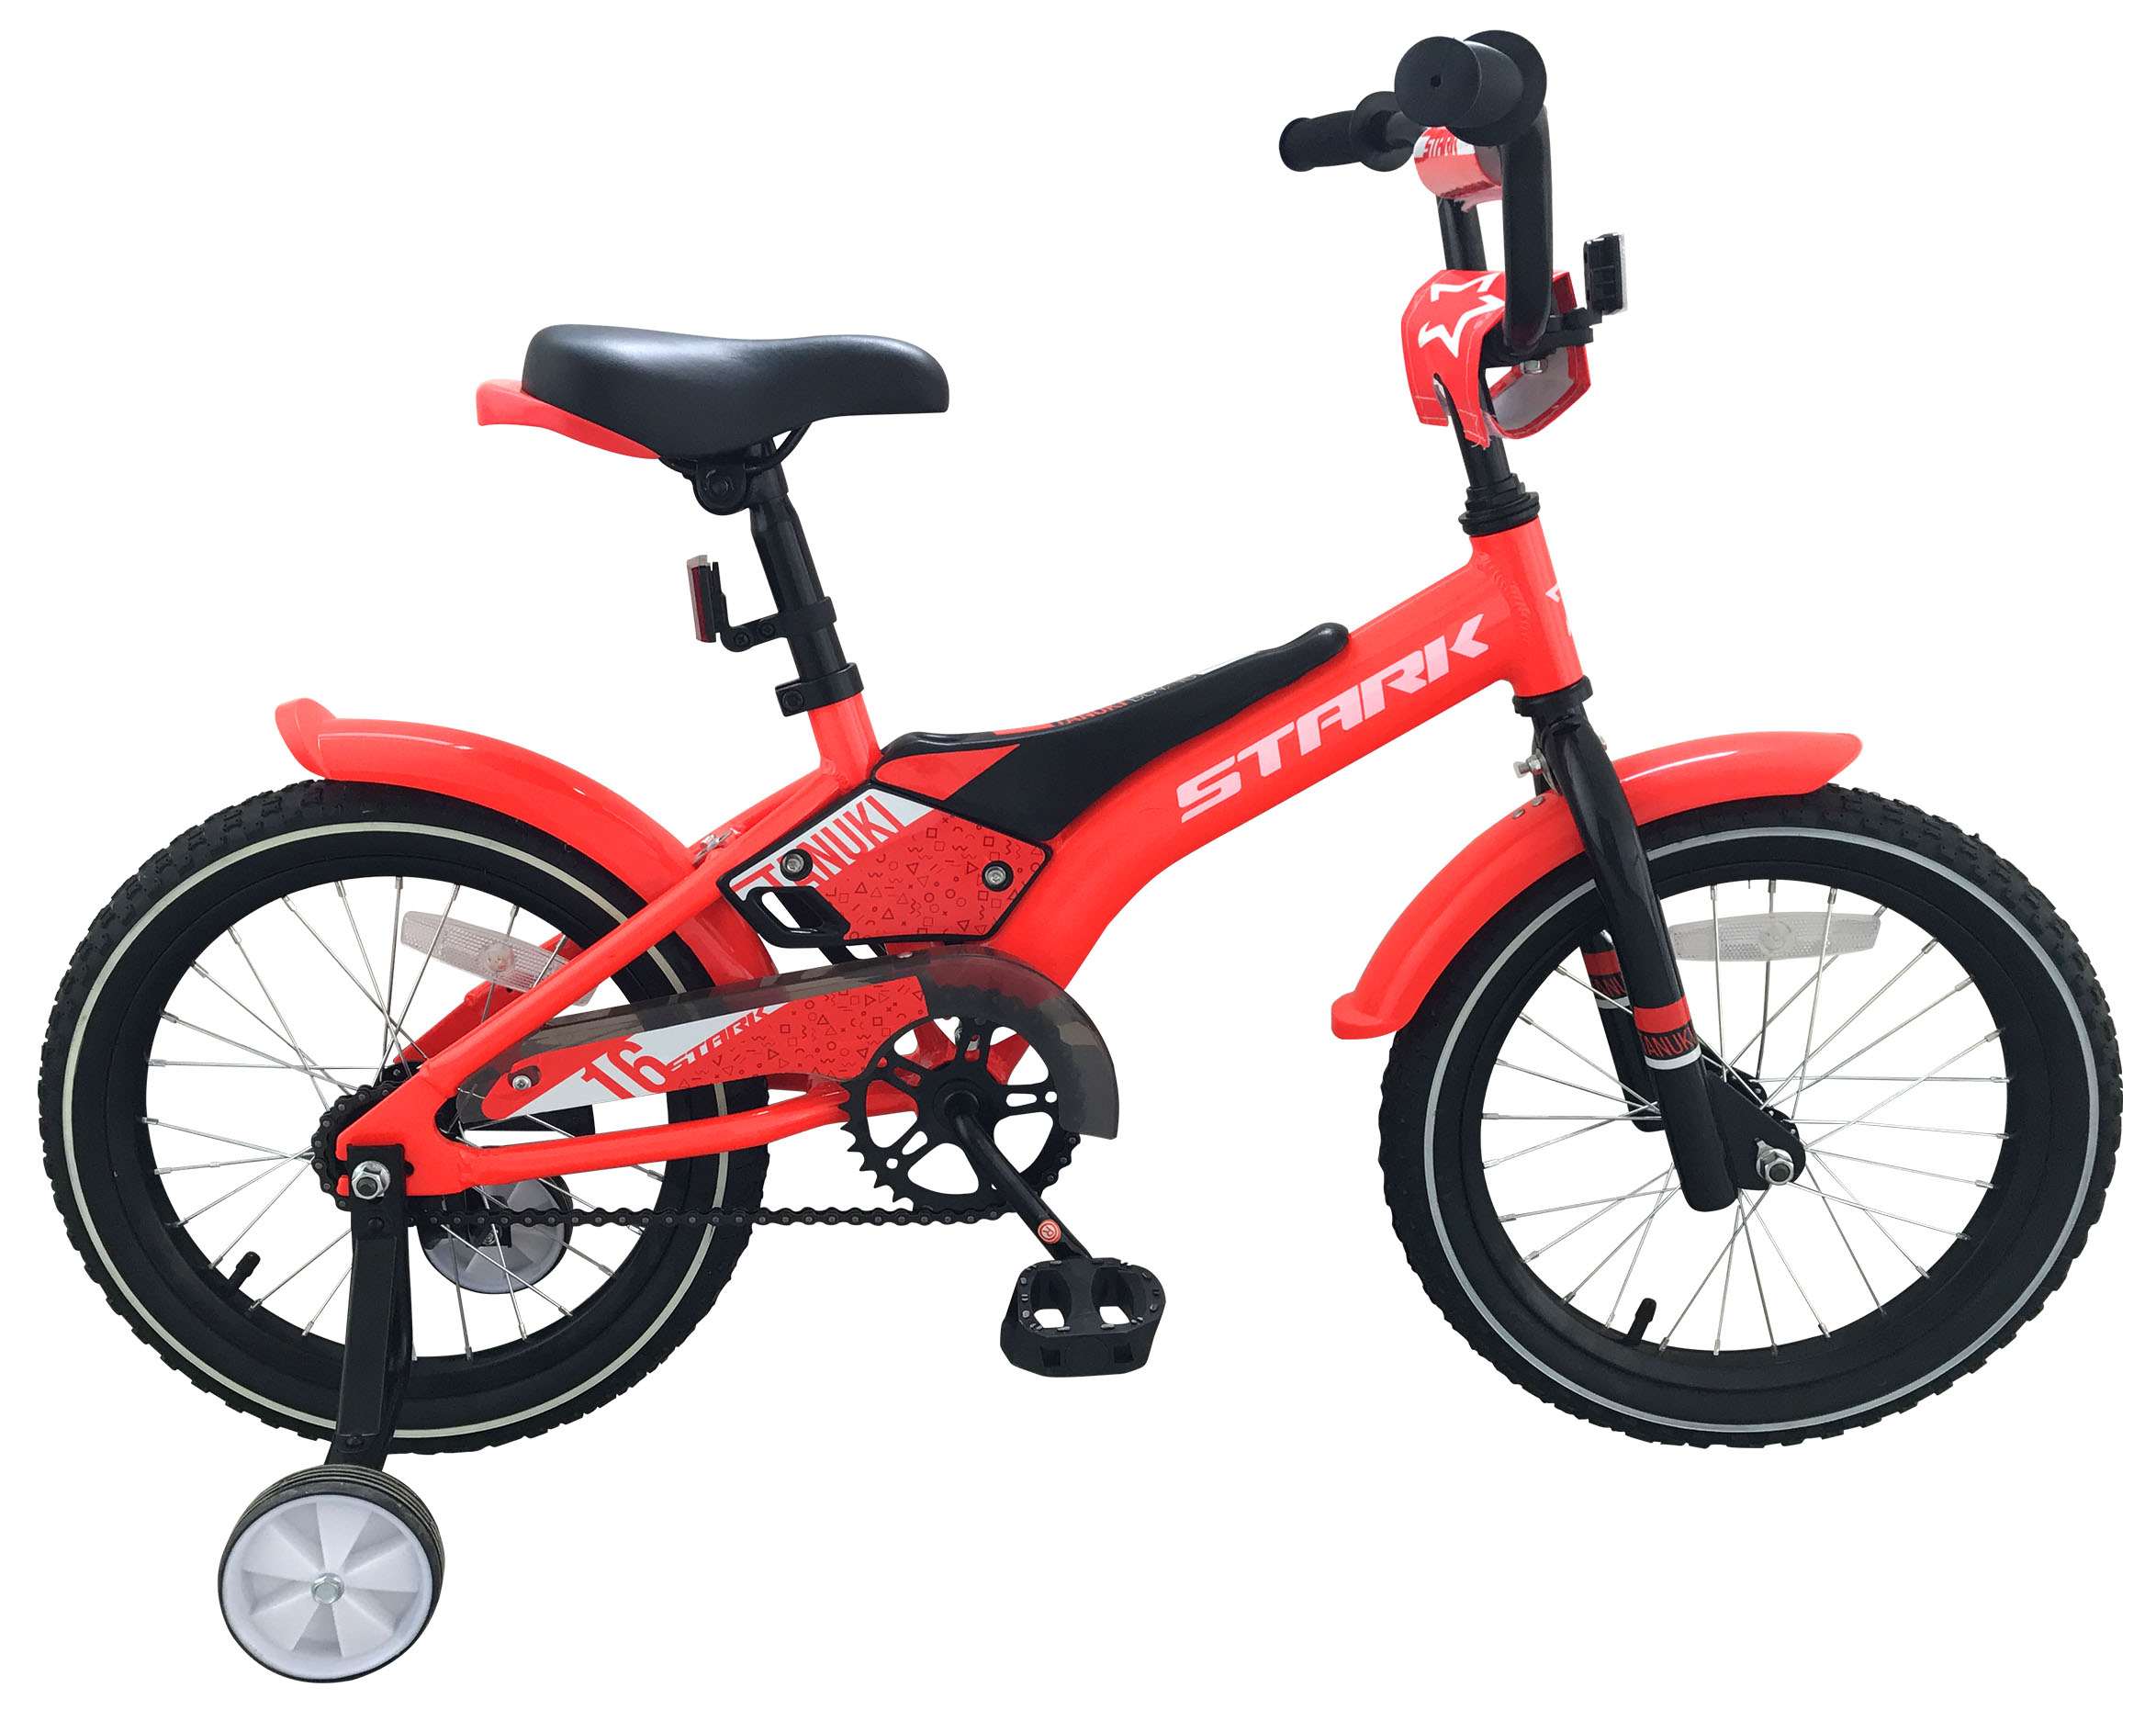  Велосипед Stark Tanuki 16 Boy 2019